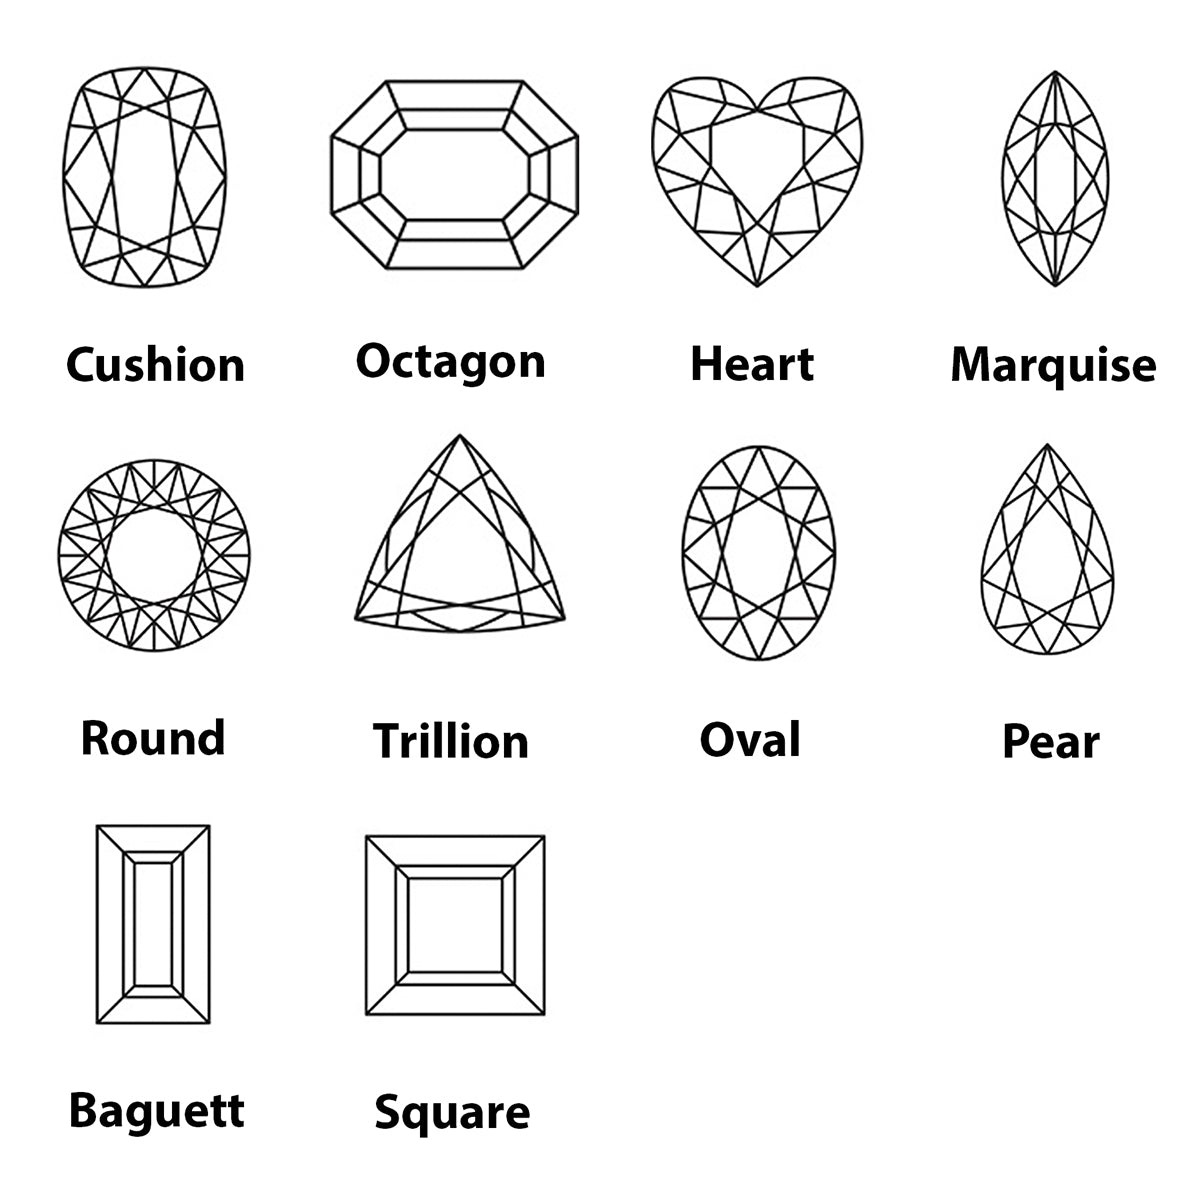 riyogems 1pc レッド ジャスパー カボション 5x5 mm 正方形の形状 aaa 品質の宝石